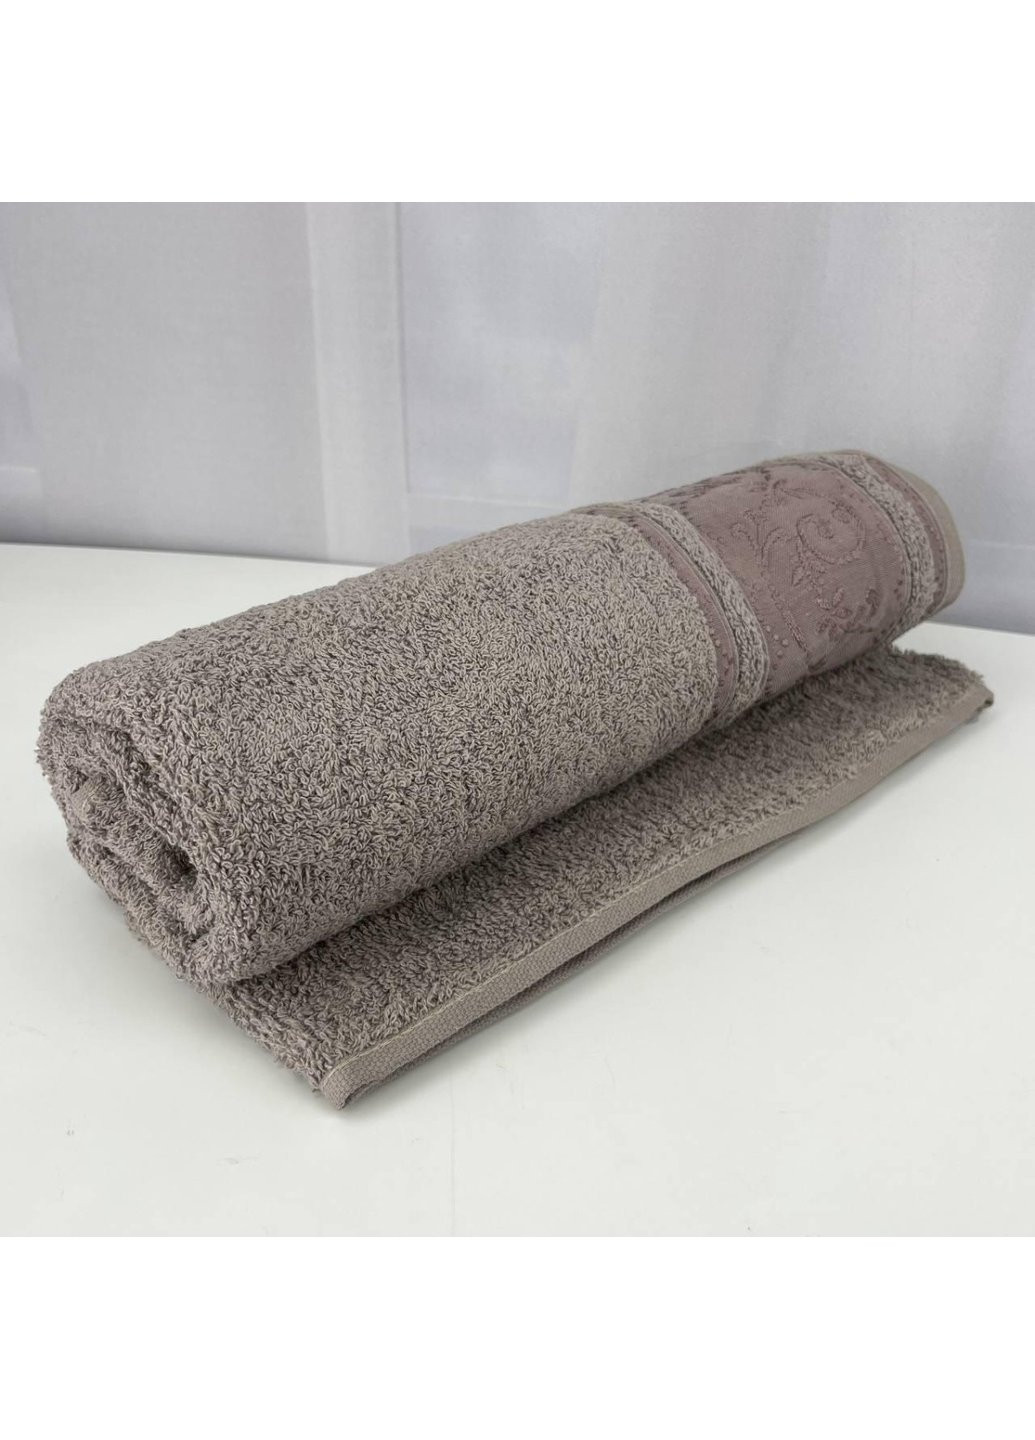 Power полотенце банное махровое febo vip cotton ecre турция 6374 коричневое 70х140 см комбинированный производство - Турция